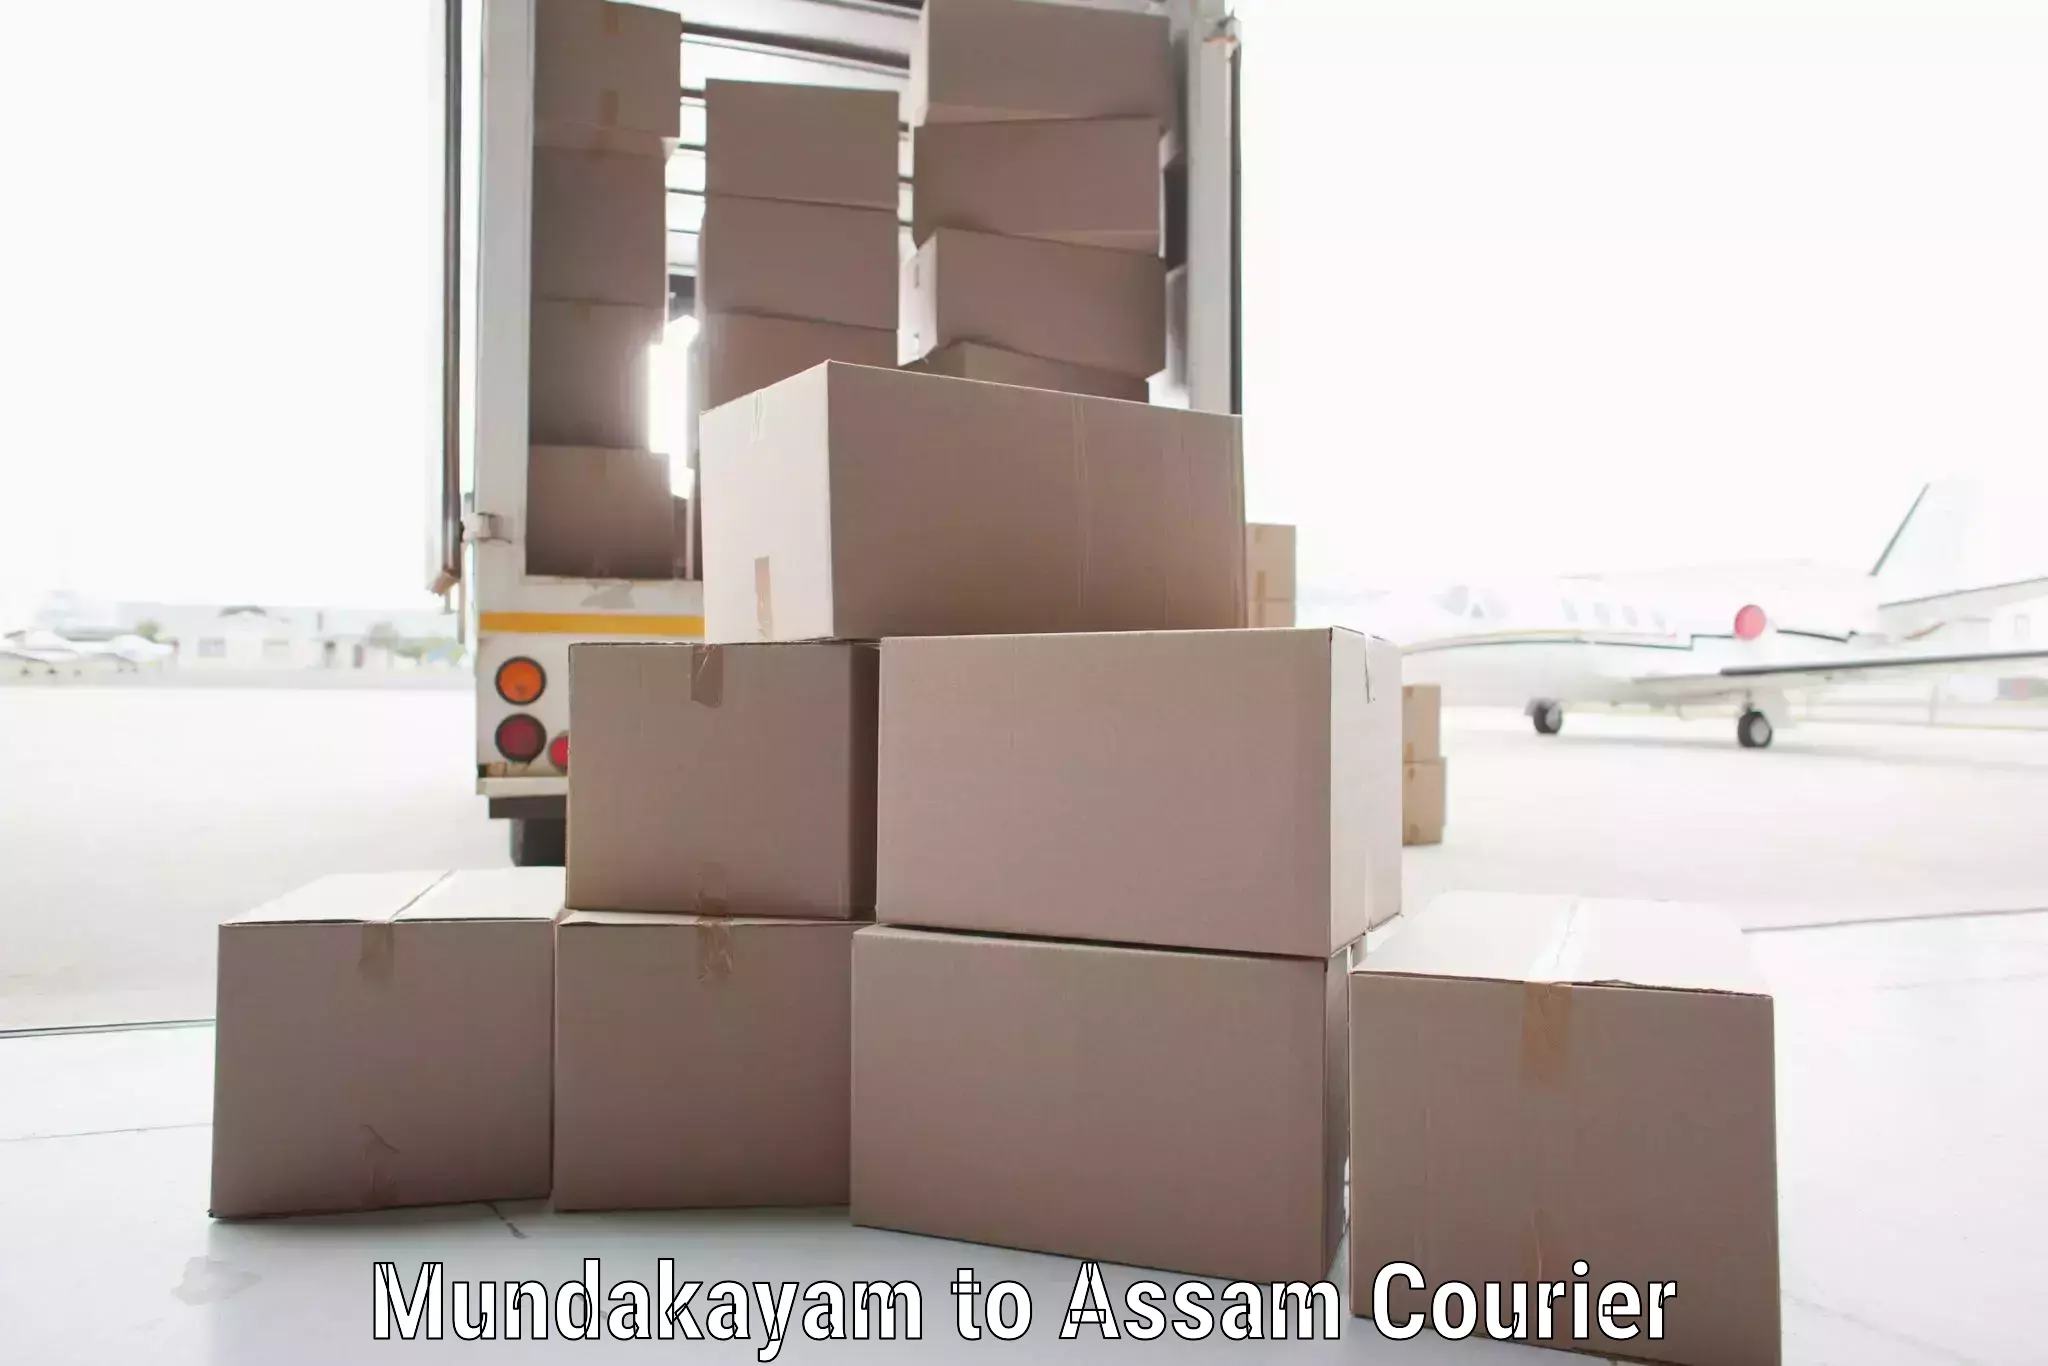 Easy access courier services Mundakayam to Udalguri